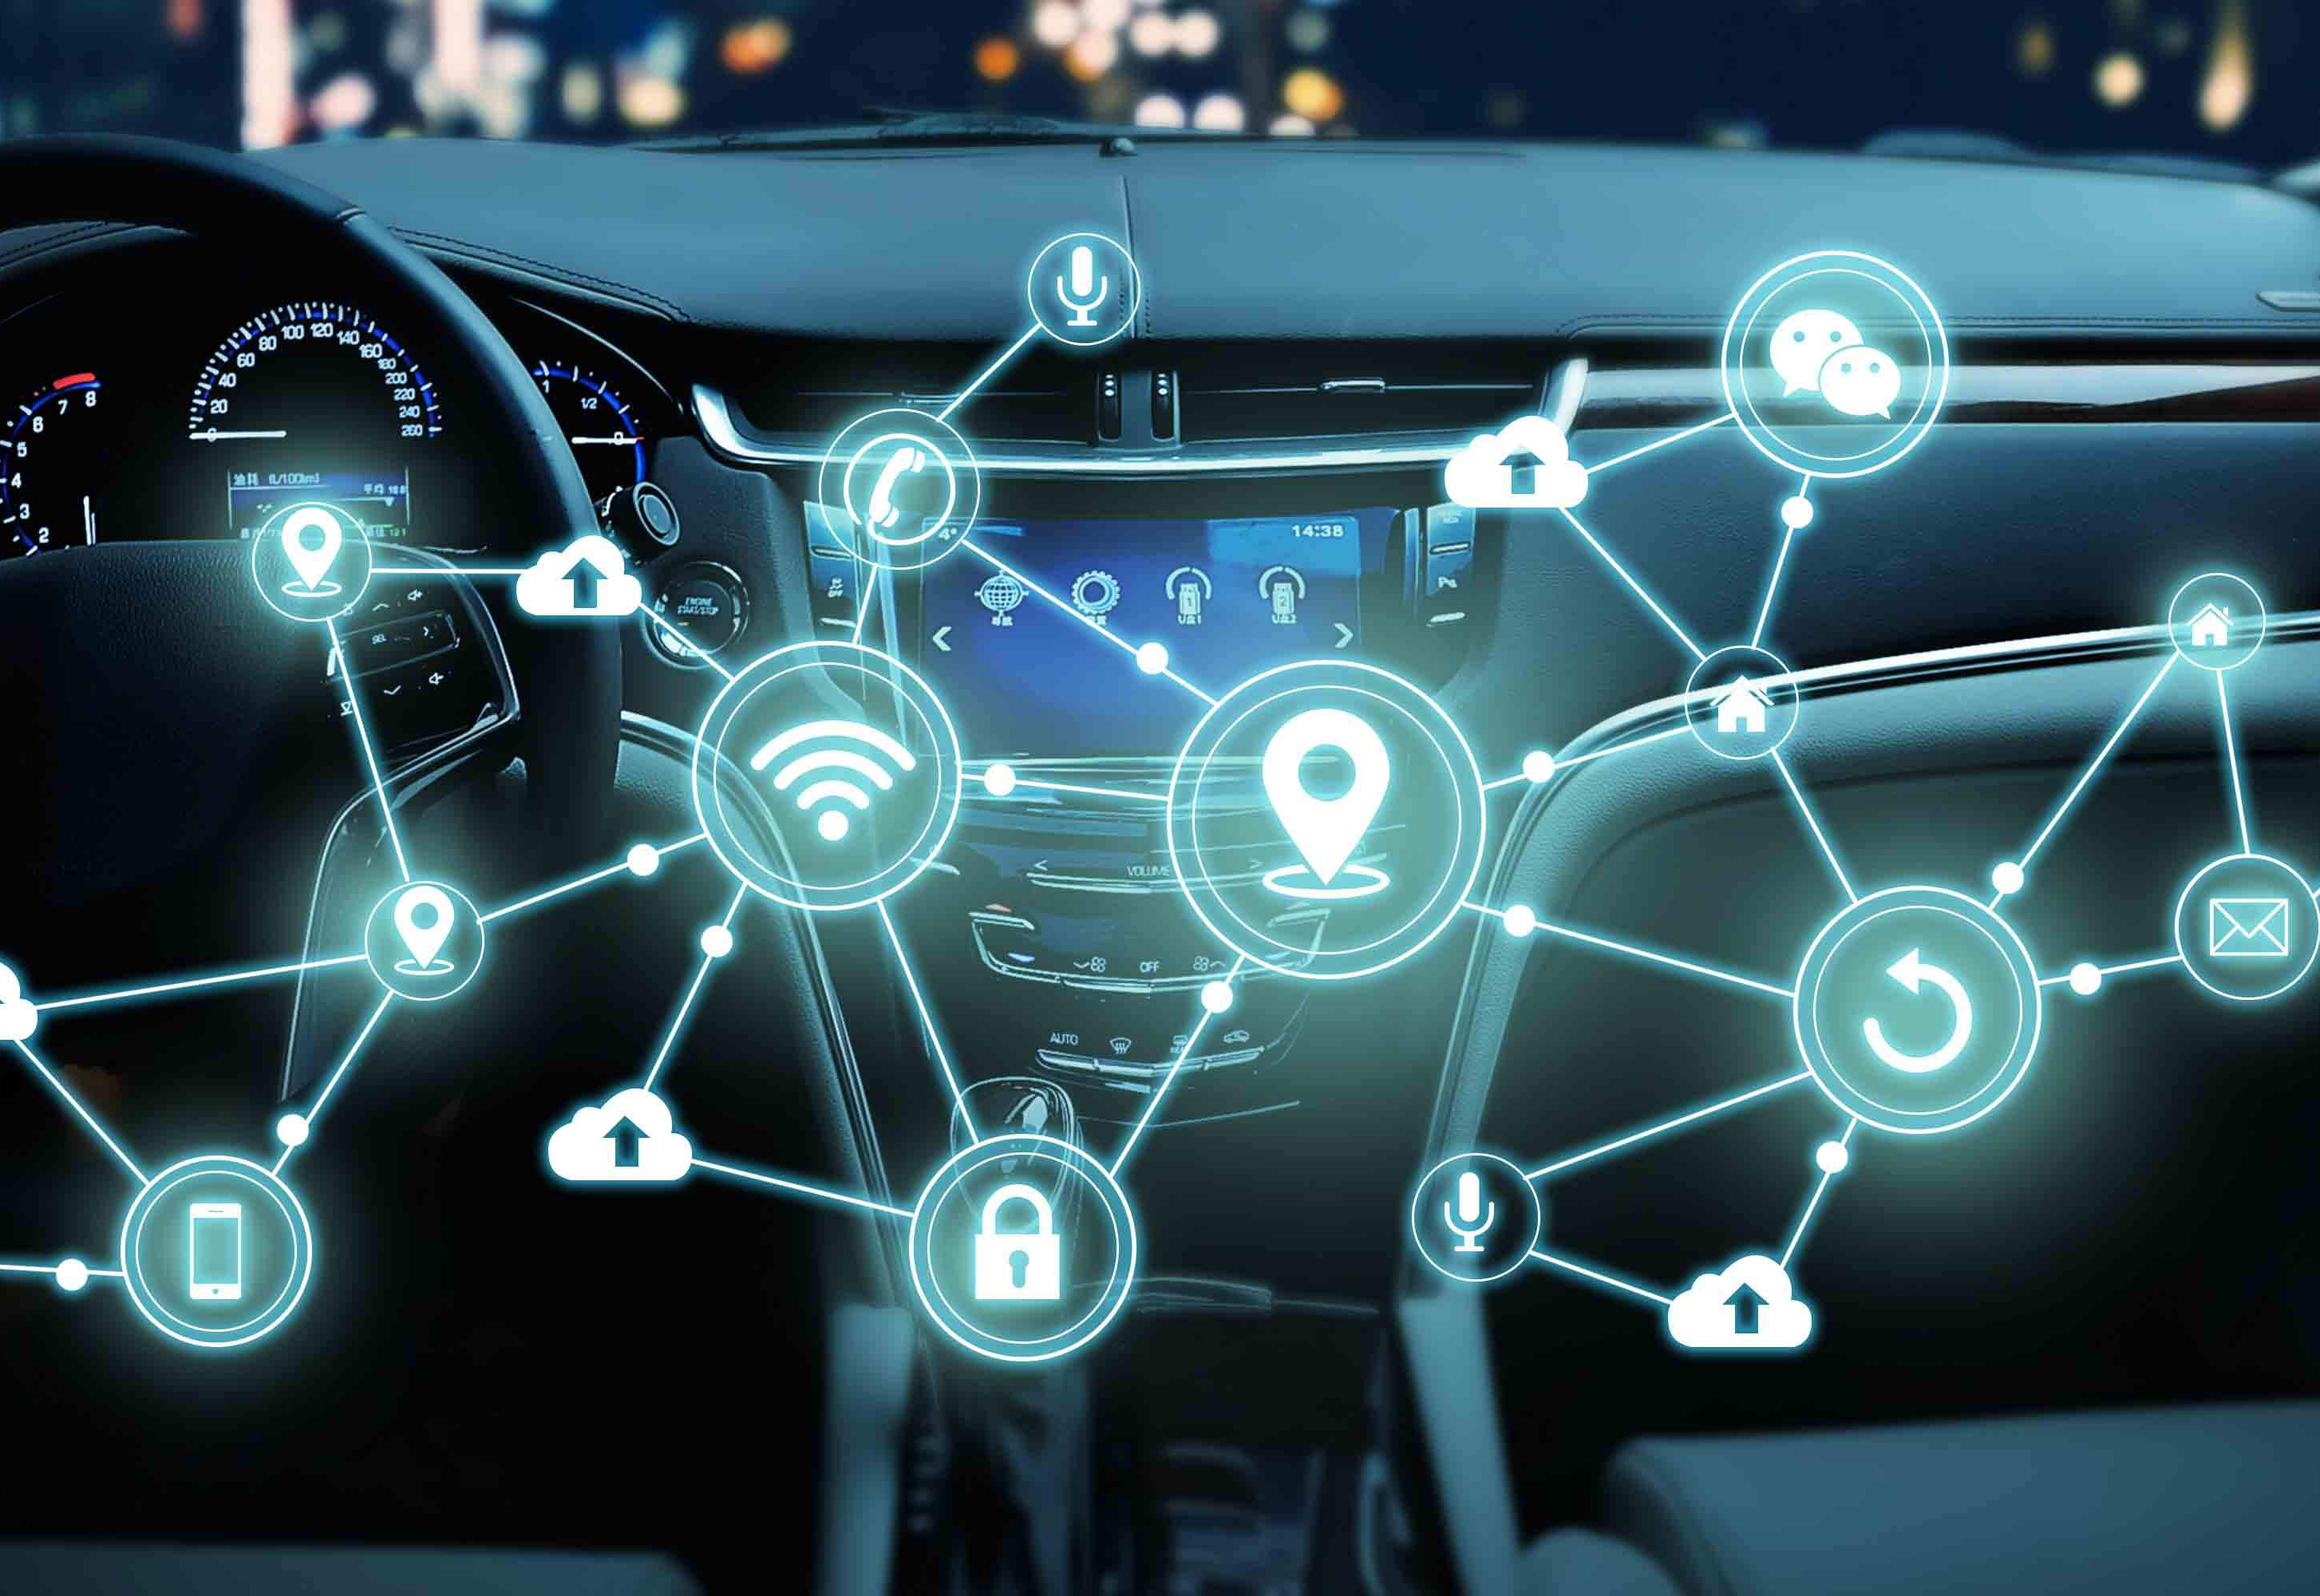 探索汽车智能共享出行行业未来发展方向、最新法规政策、商业模式和领先核心技术 ——2018国际汽车智能共享出行大会11月亮相羊城